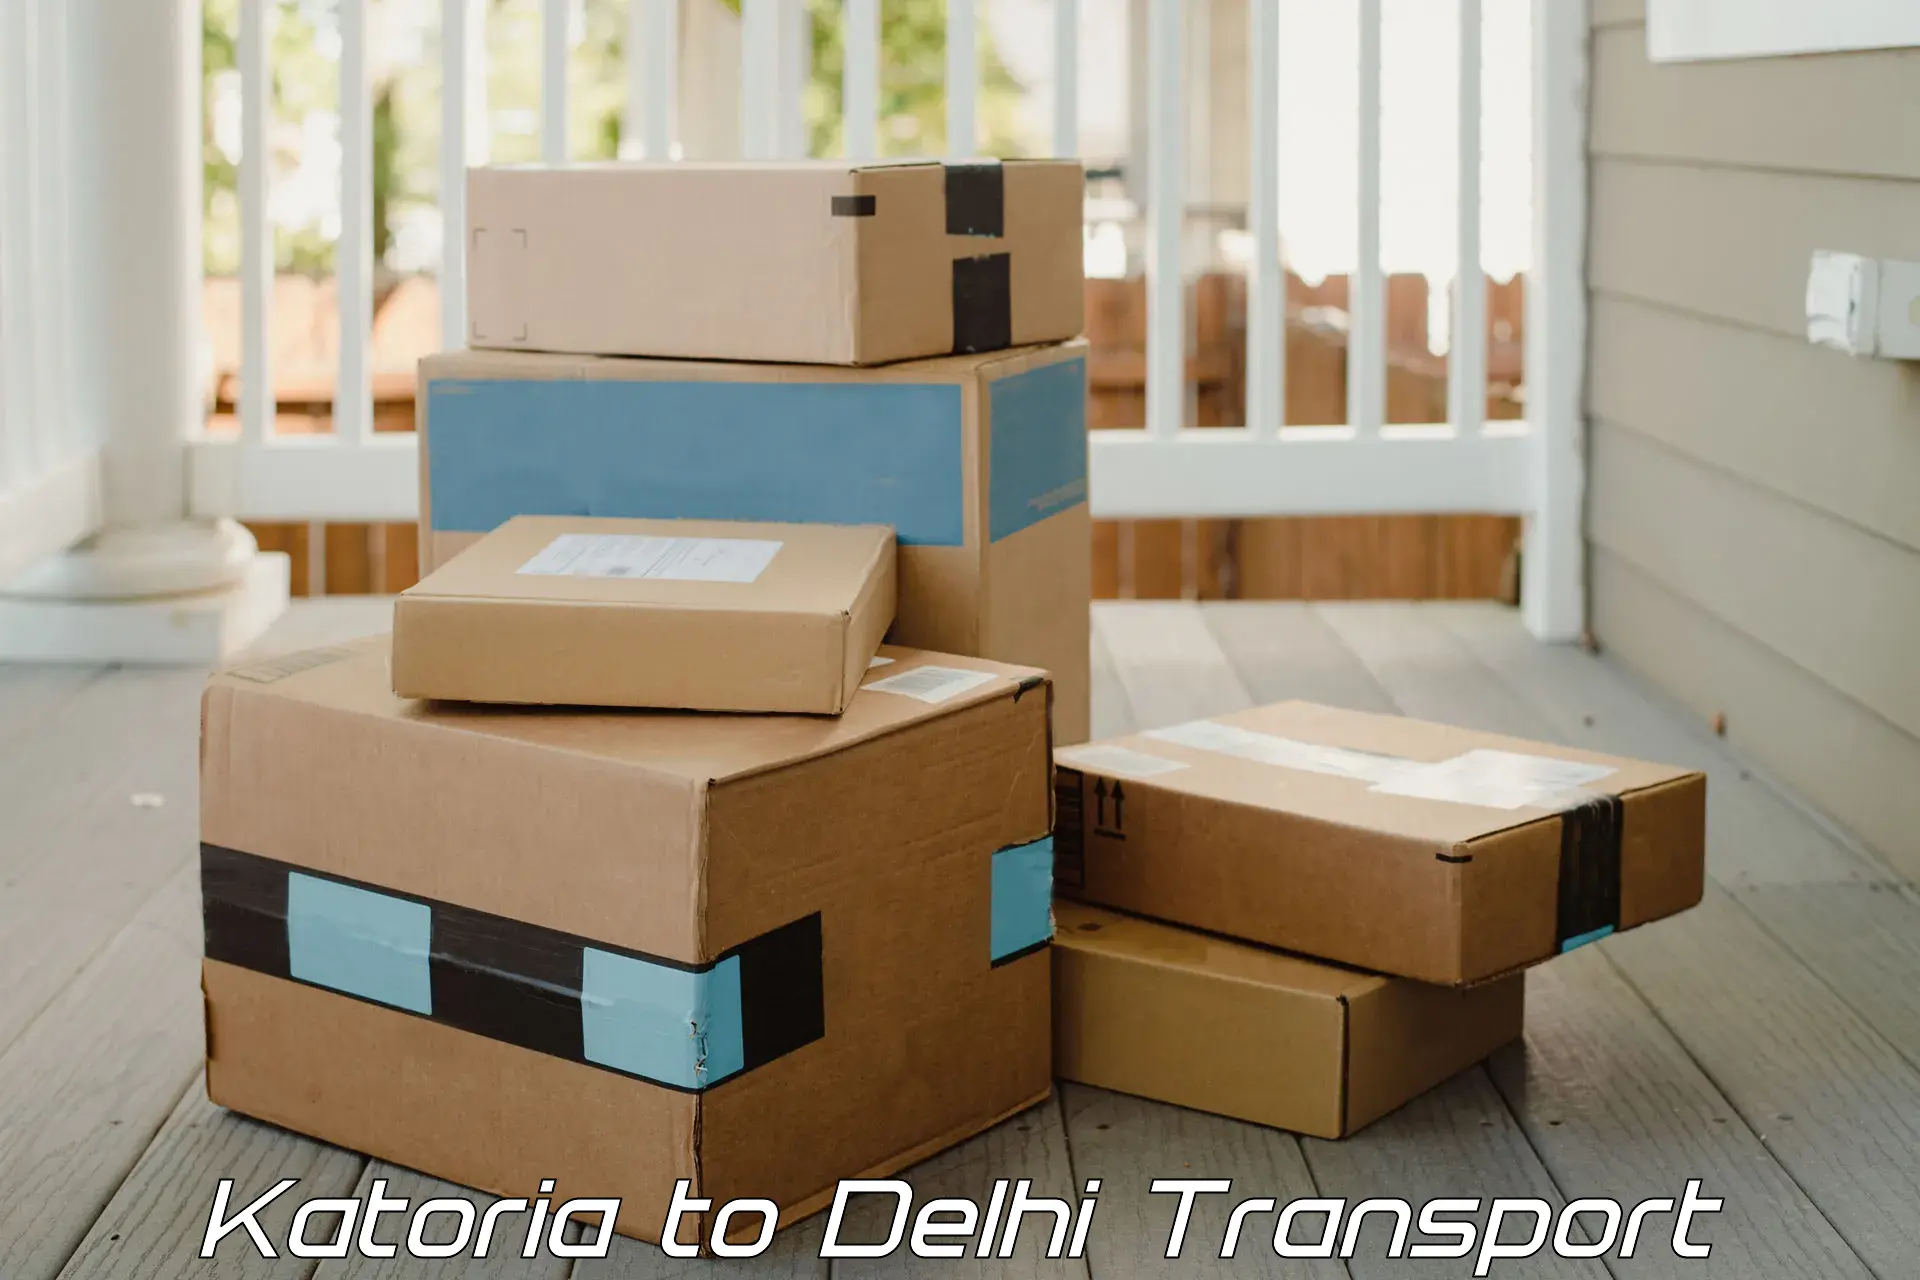 Land transport services Katoria to Jamia Millia Islamia New Delhi